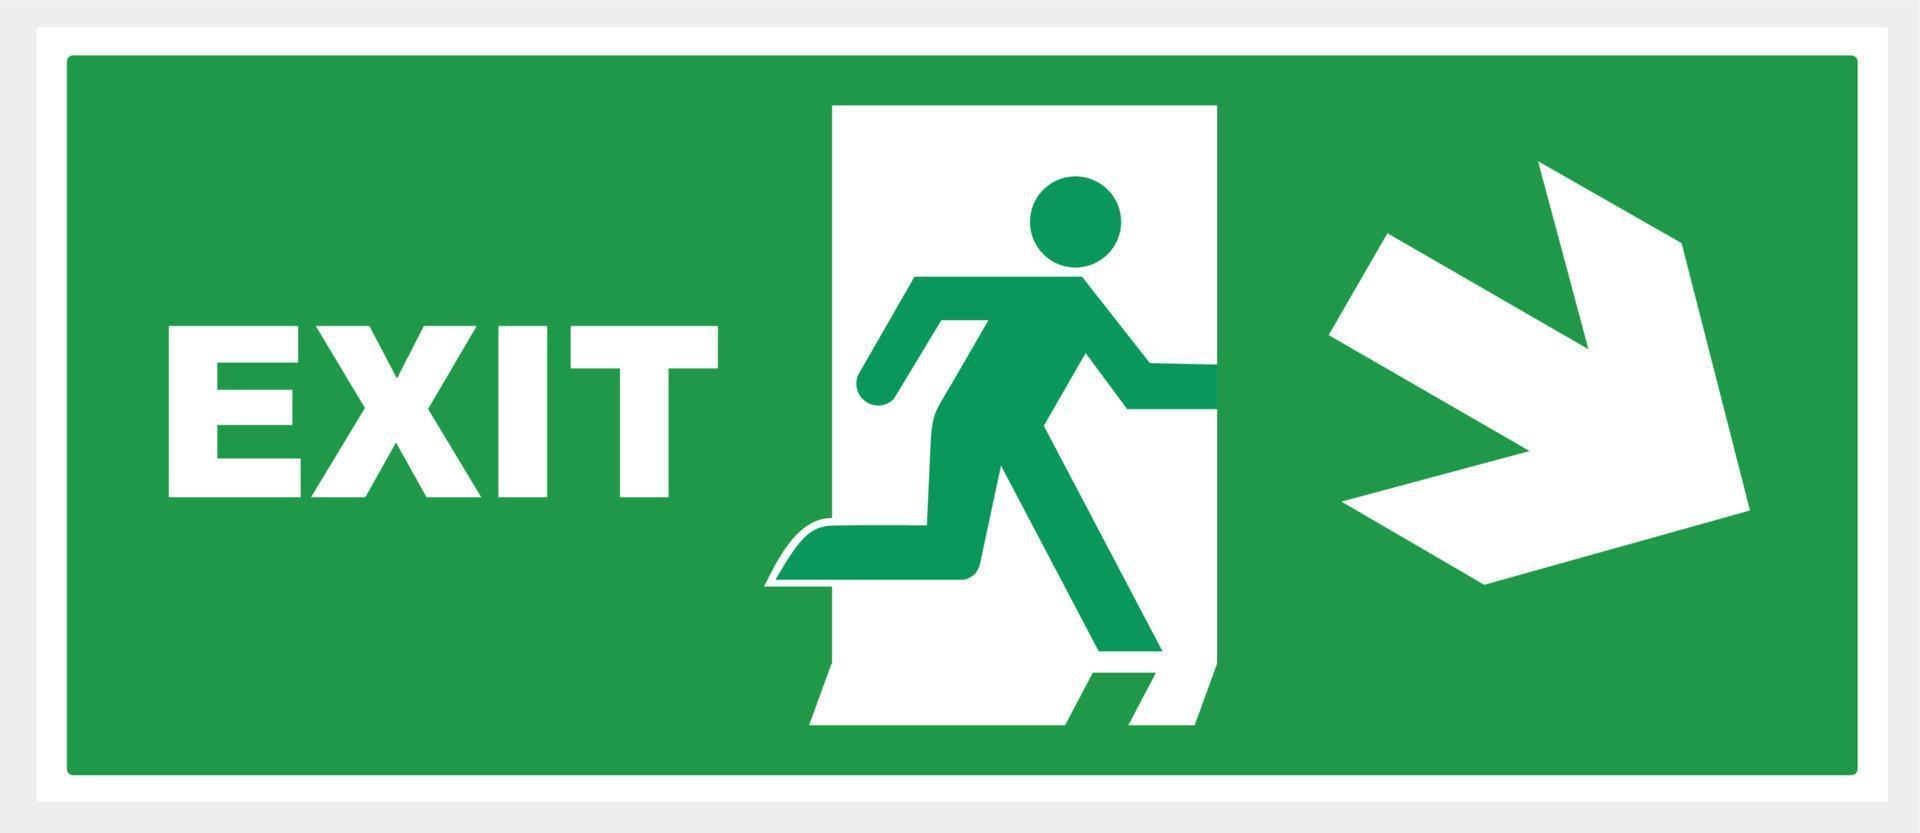 assine a seta de saída de emergência. fundo verde. ilustração vetor